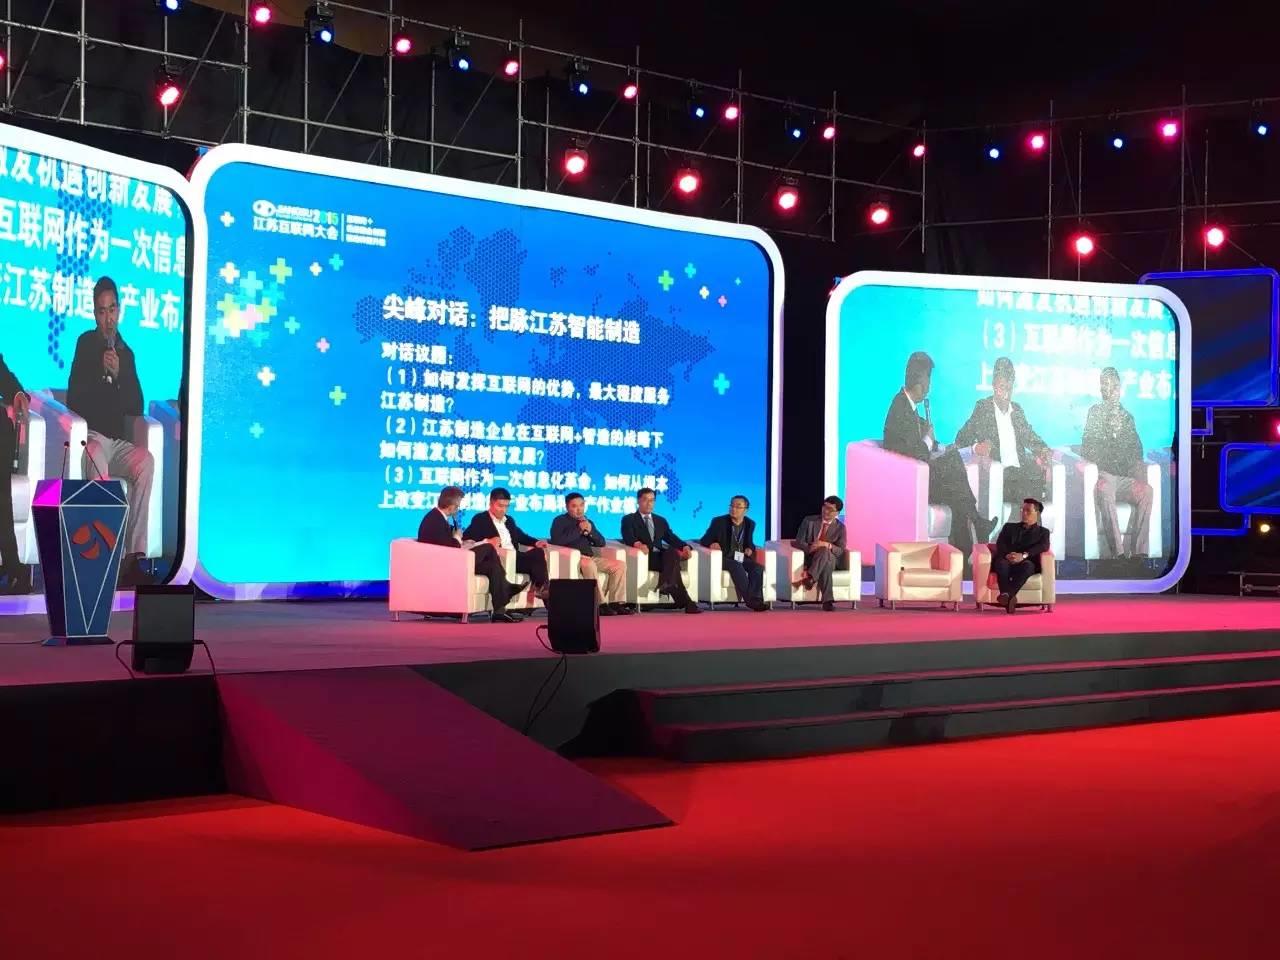 物联传感CEO朱俊岗应邀出席2015江苏互联网大会并发表精彩演讲